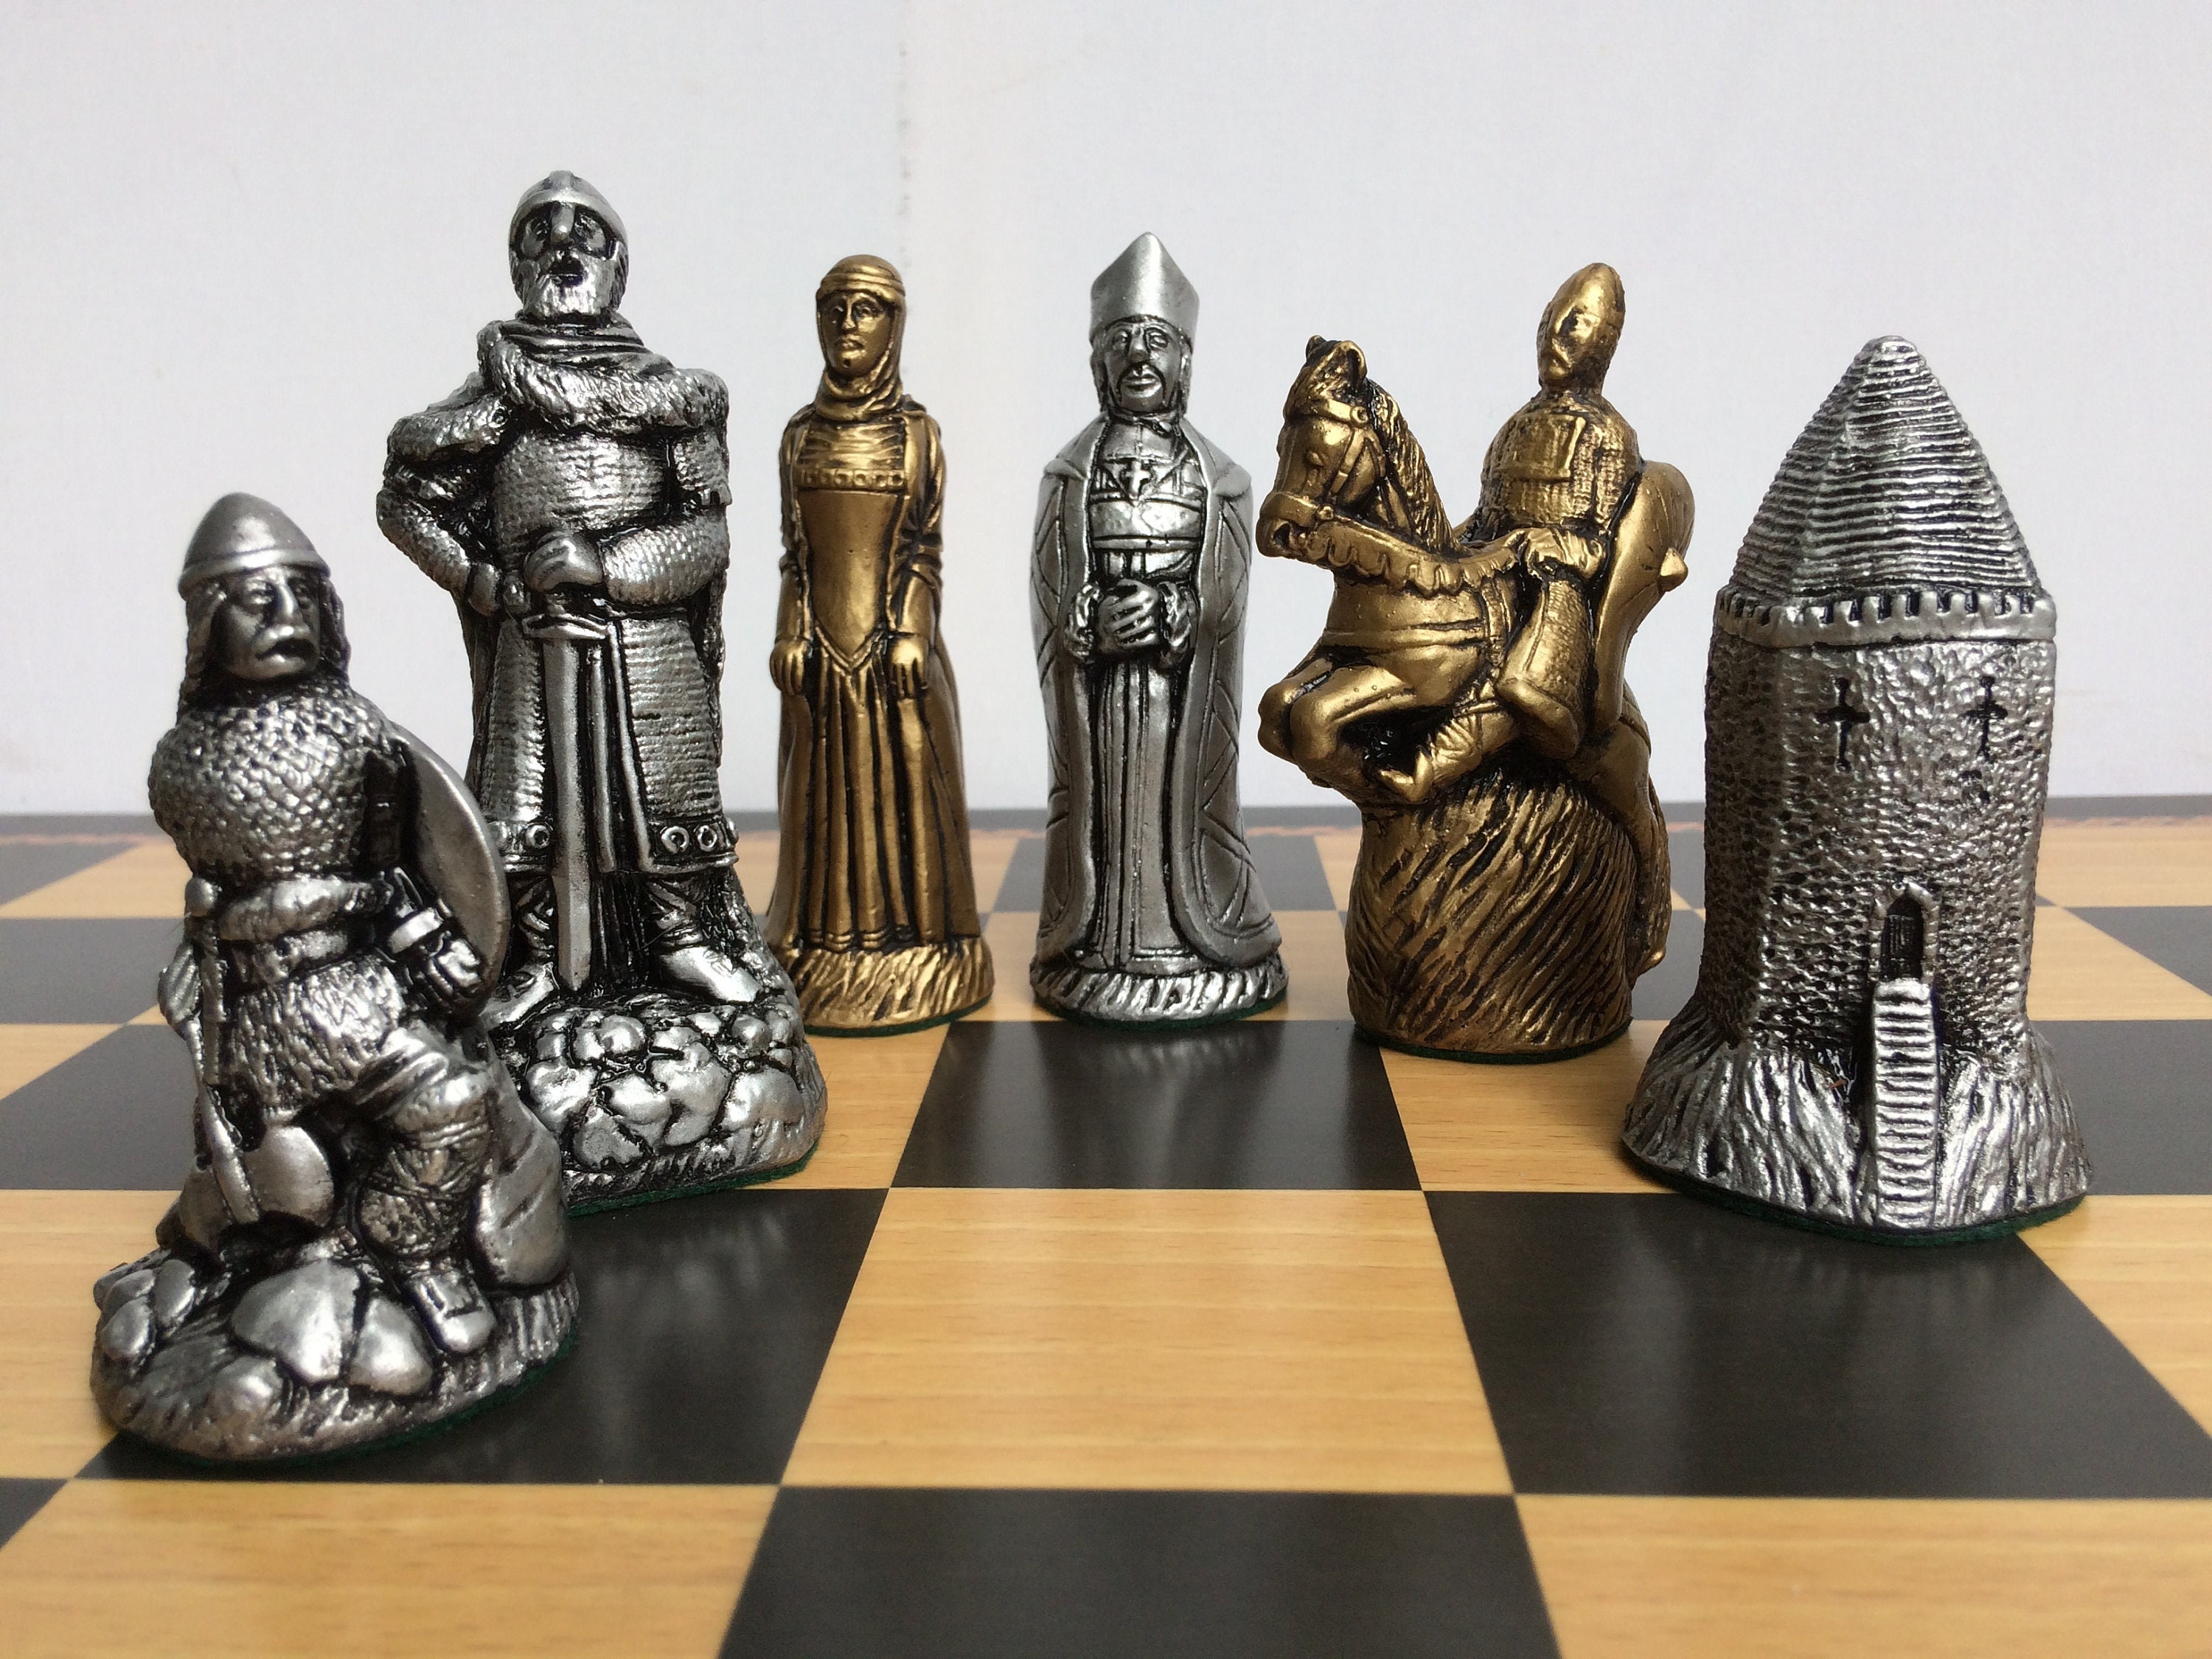 Historical Chess Sets - Theme Chess Sets - Beautiful Chess Sets